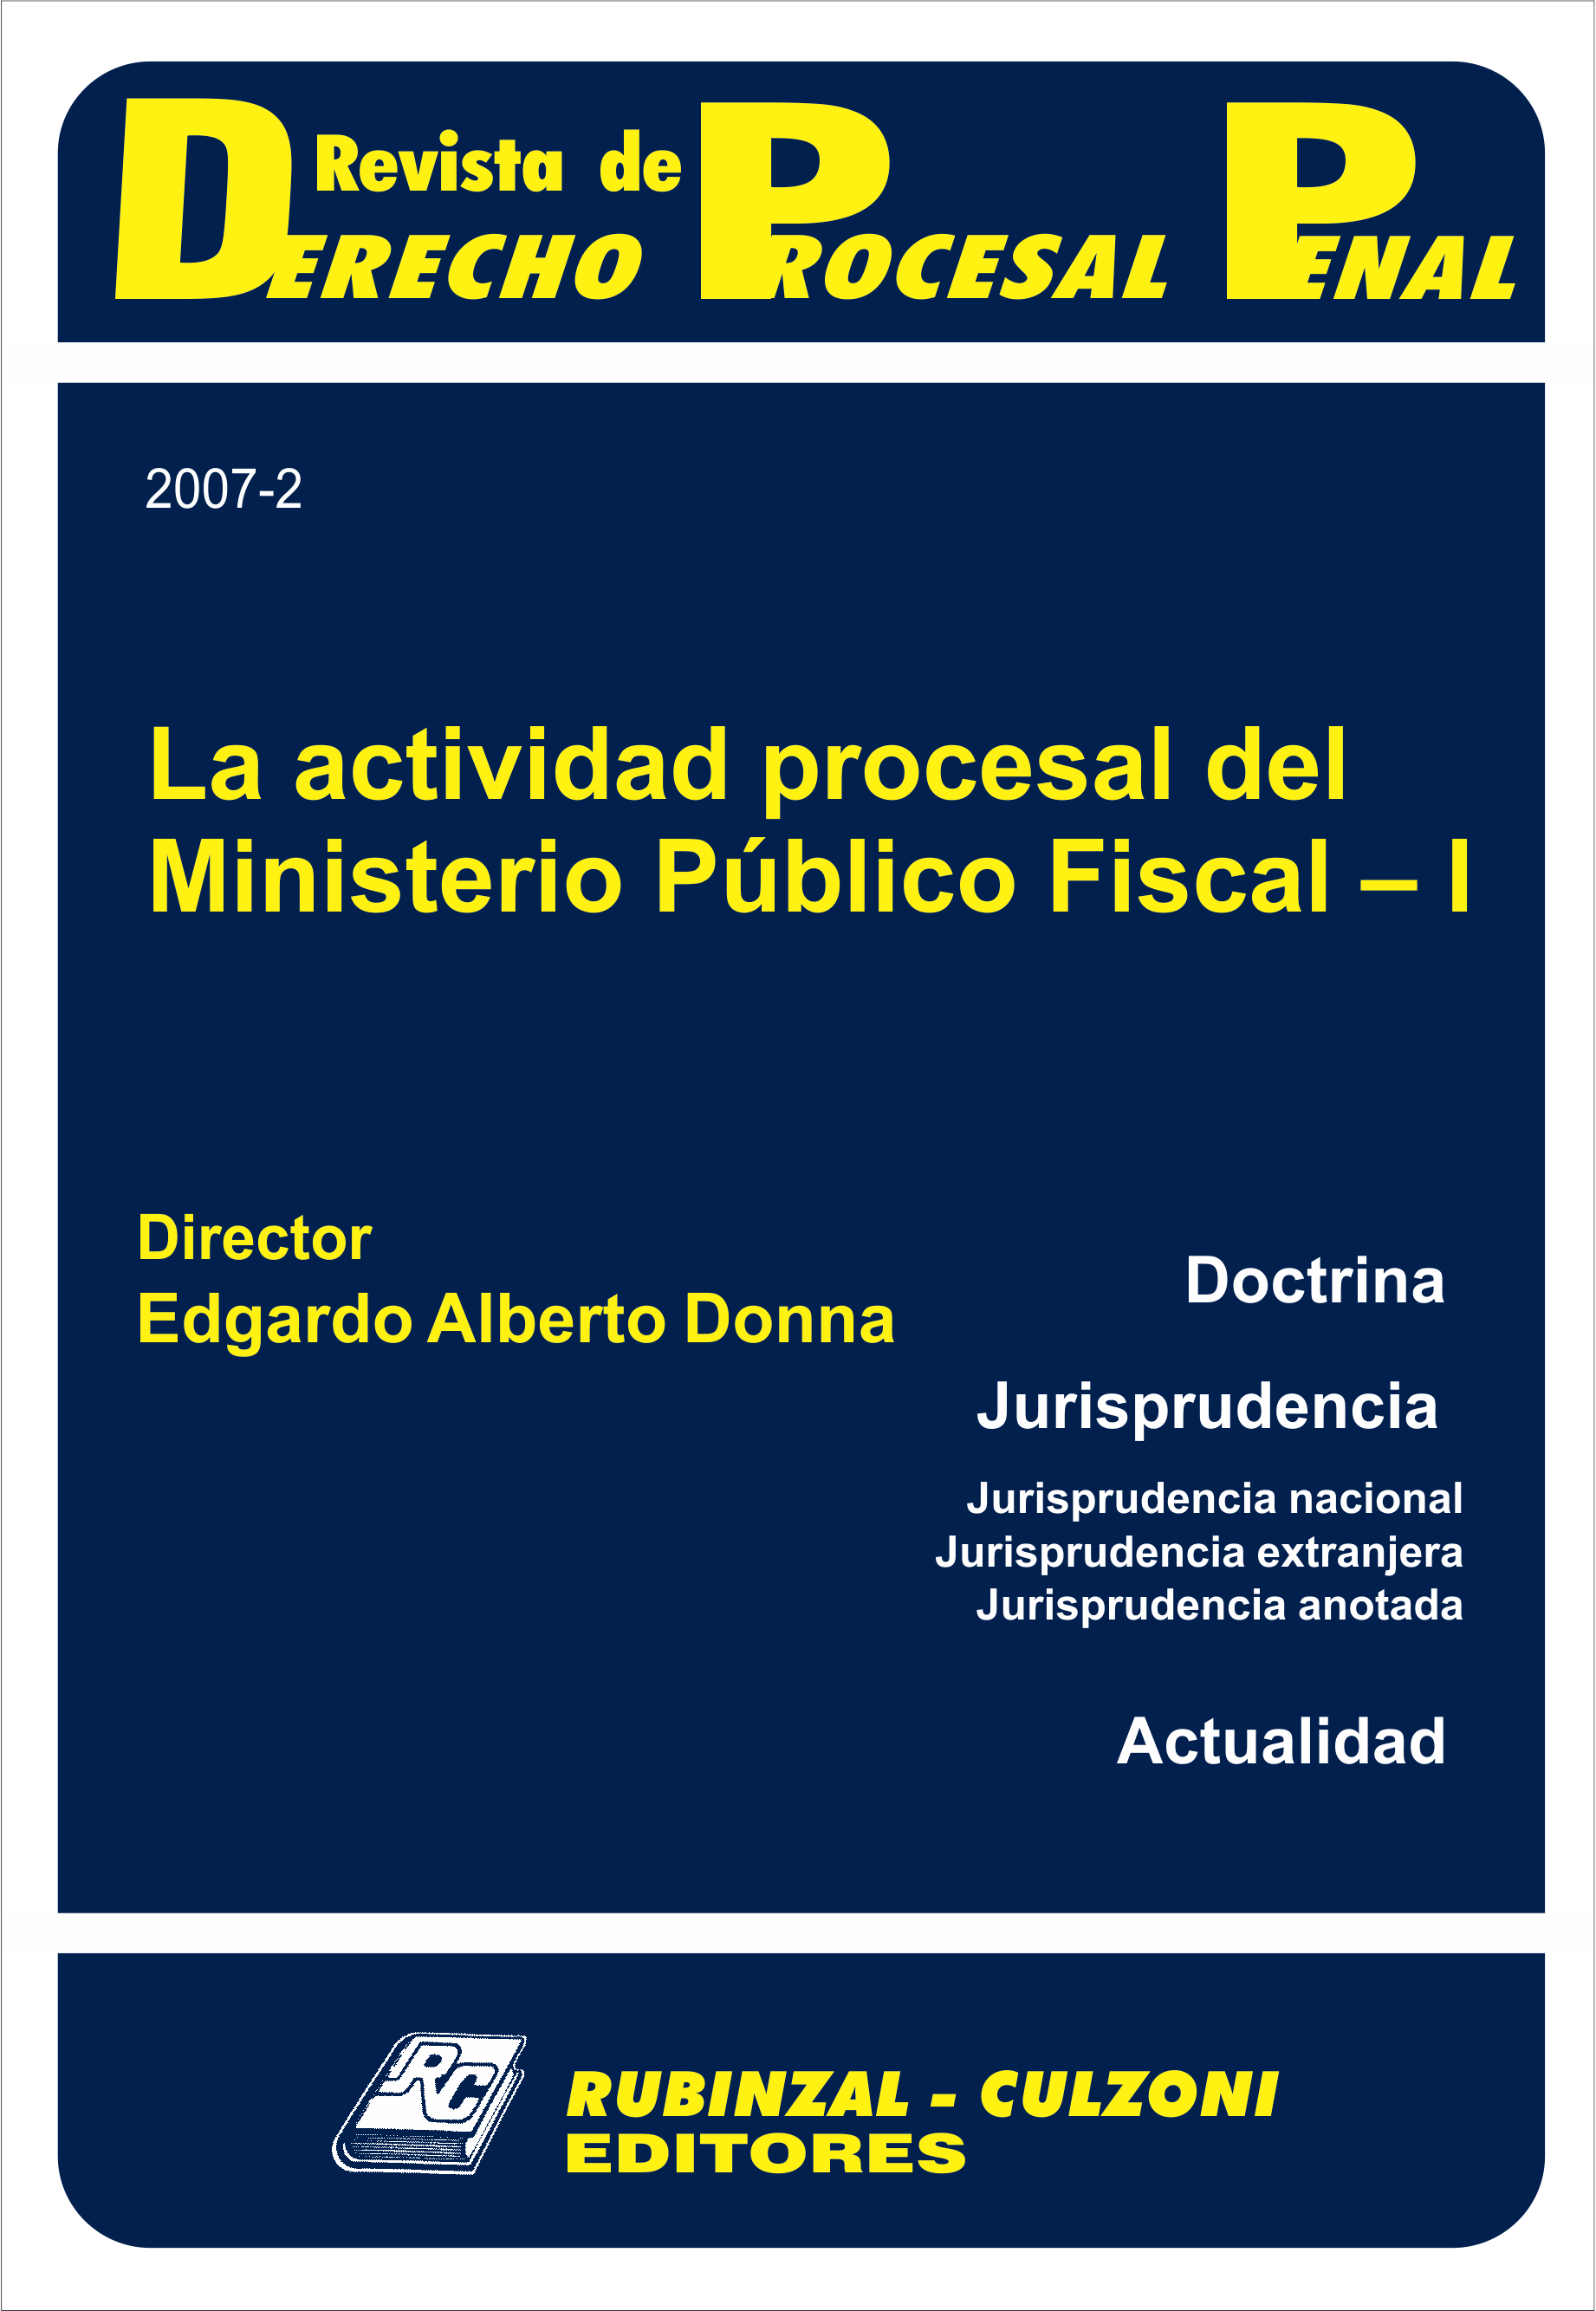 Revista de Derecho Procesal Penal - La actividad procesal del Ministerio Público Fiscal - I